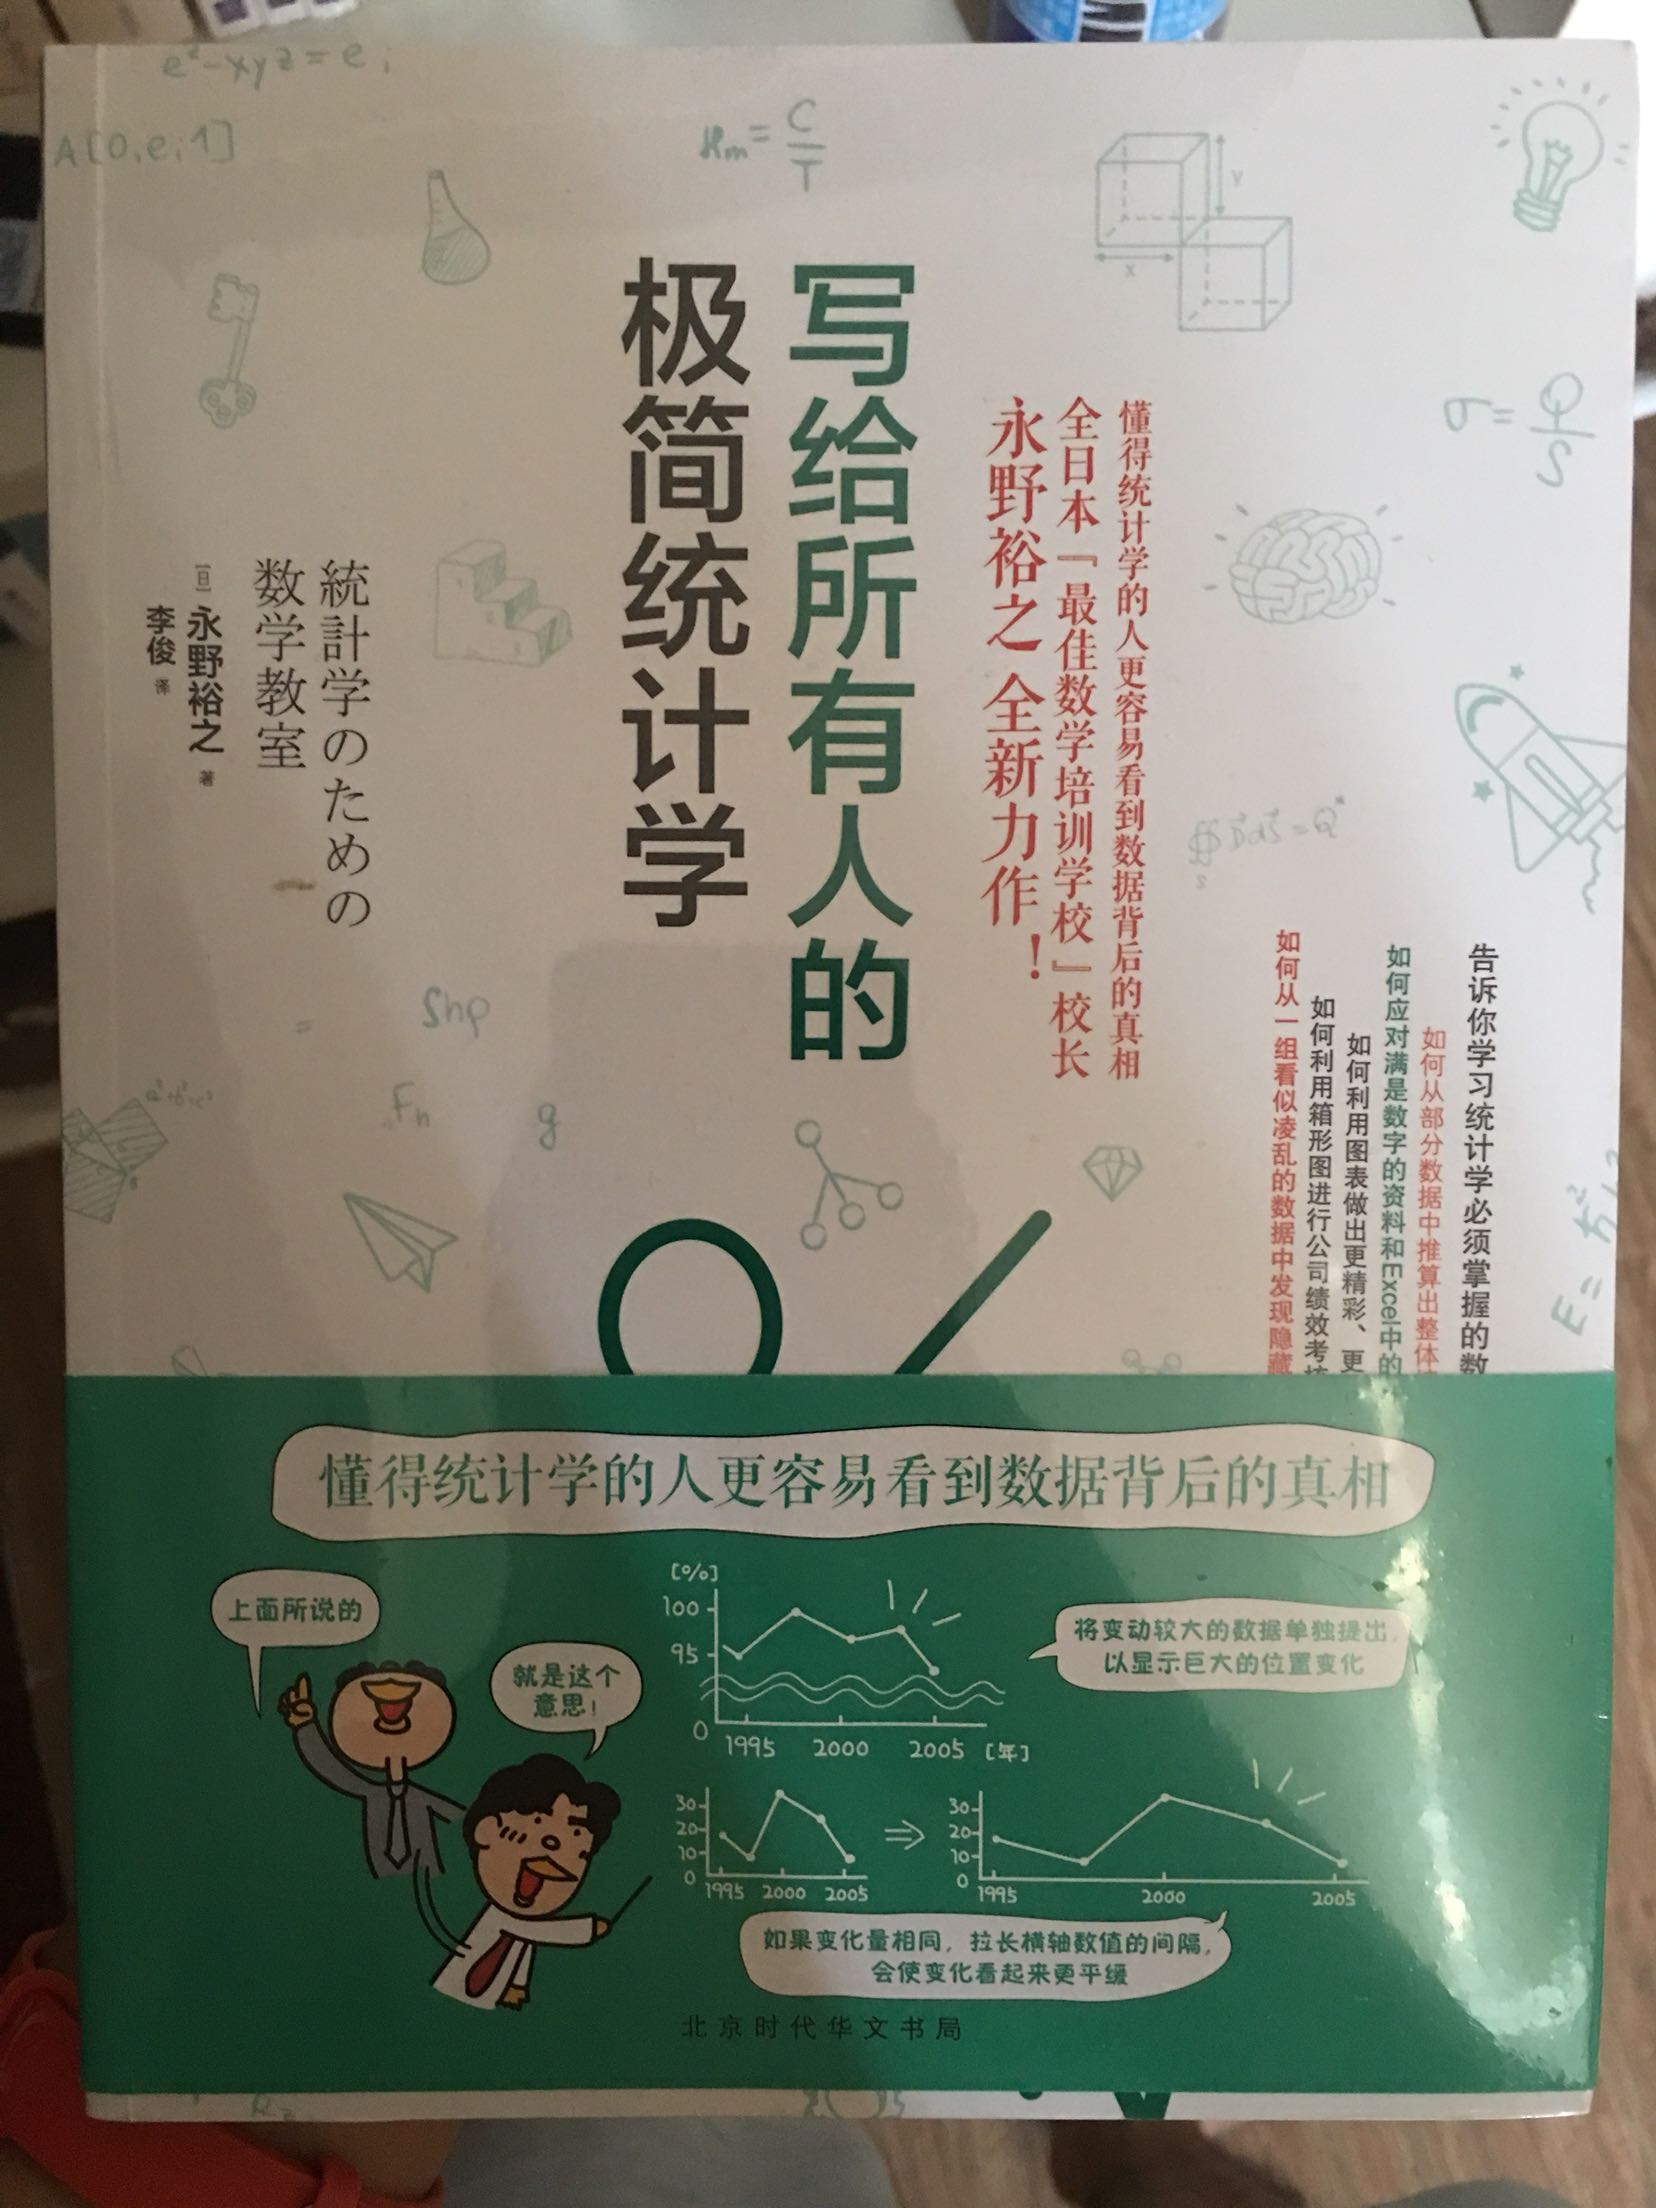 学一点统计学应该很有趣吧，之前看过日本人写的书，都非常的简单易懂，书本包装的很好很干净